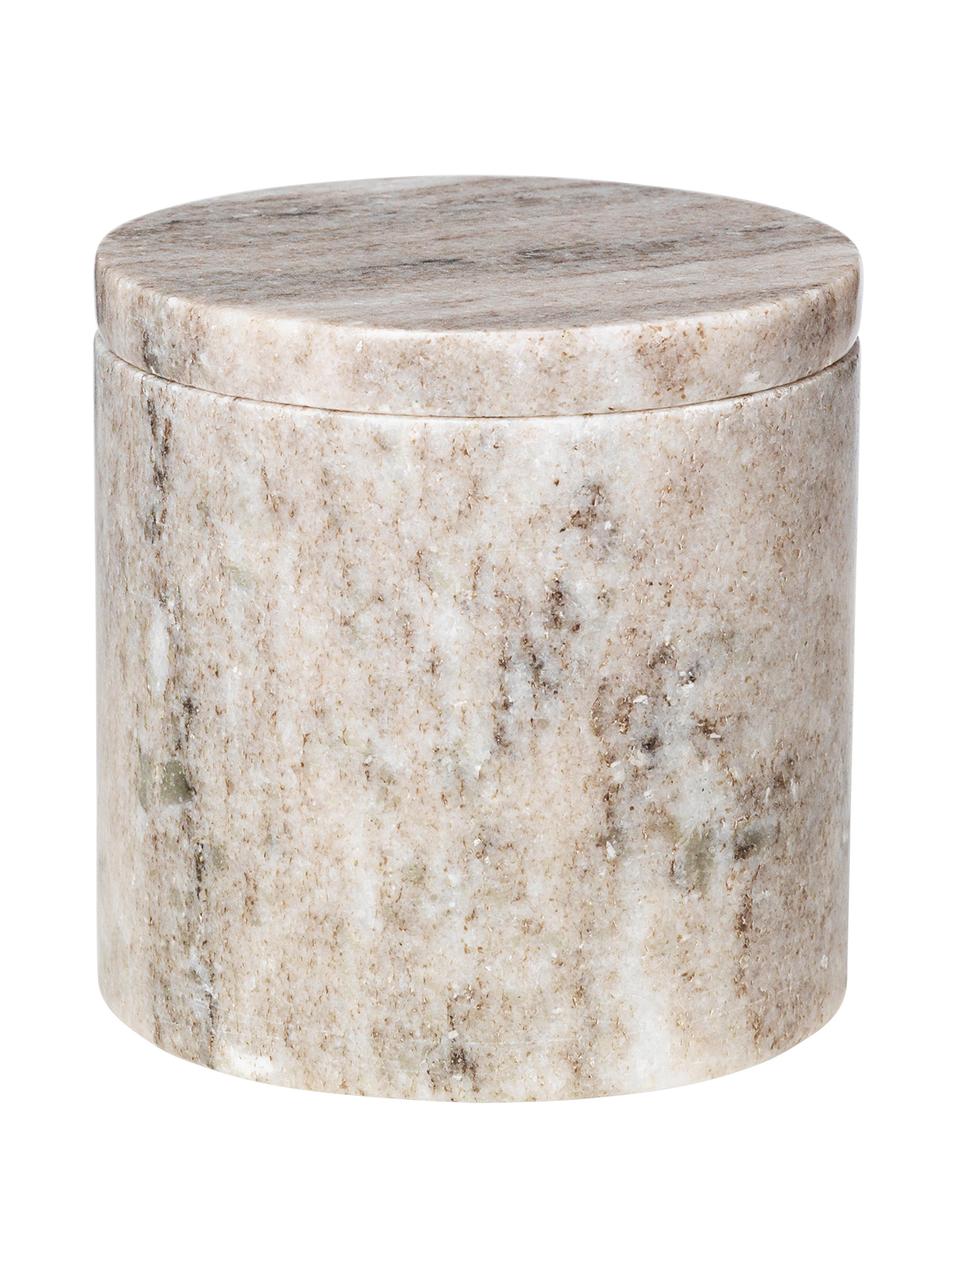 Mramorová úložná dóza Osvald, Mramor

Mramor je prírodný kameň, a preto je jedinečný svojou štruktúrou. Každý výrobok je jedinečný kus., Béžová, mramorovaná, Ø 10, V 10 cm